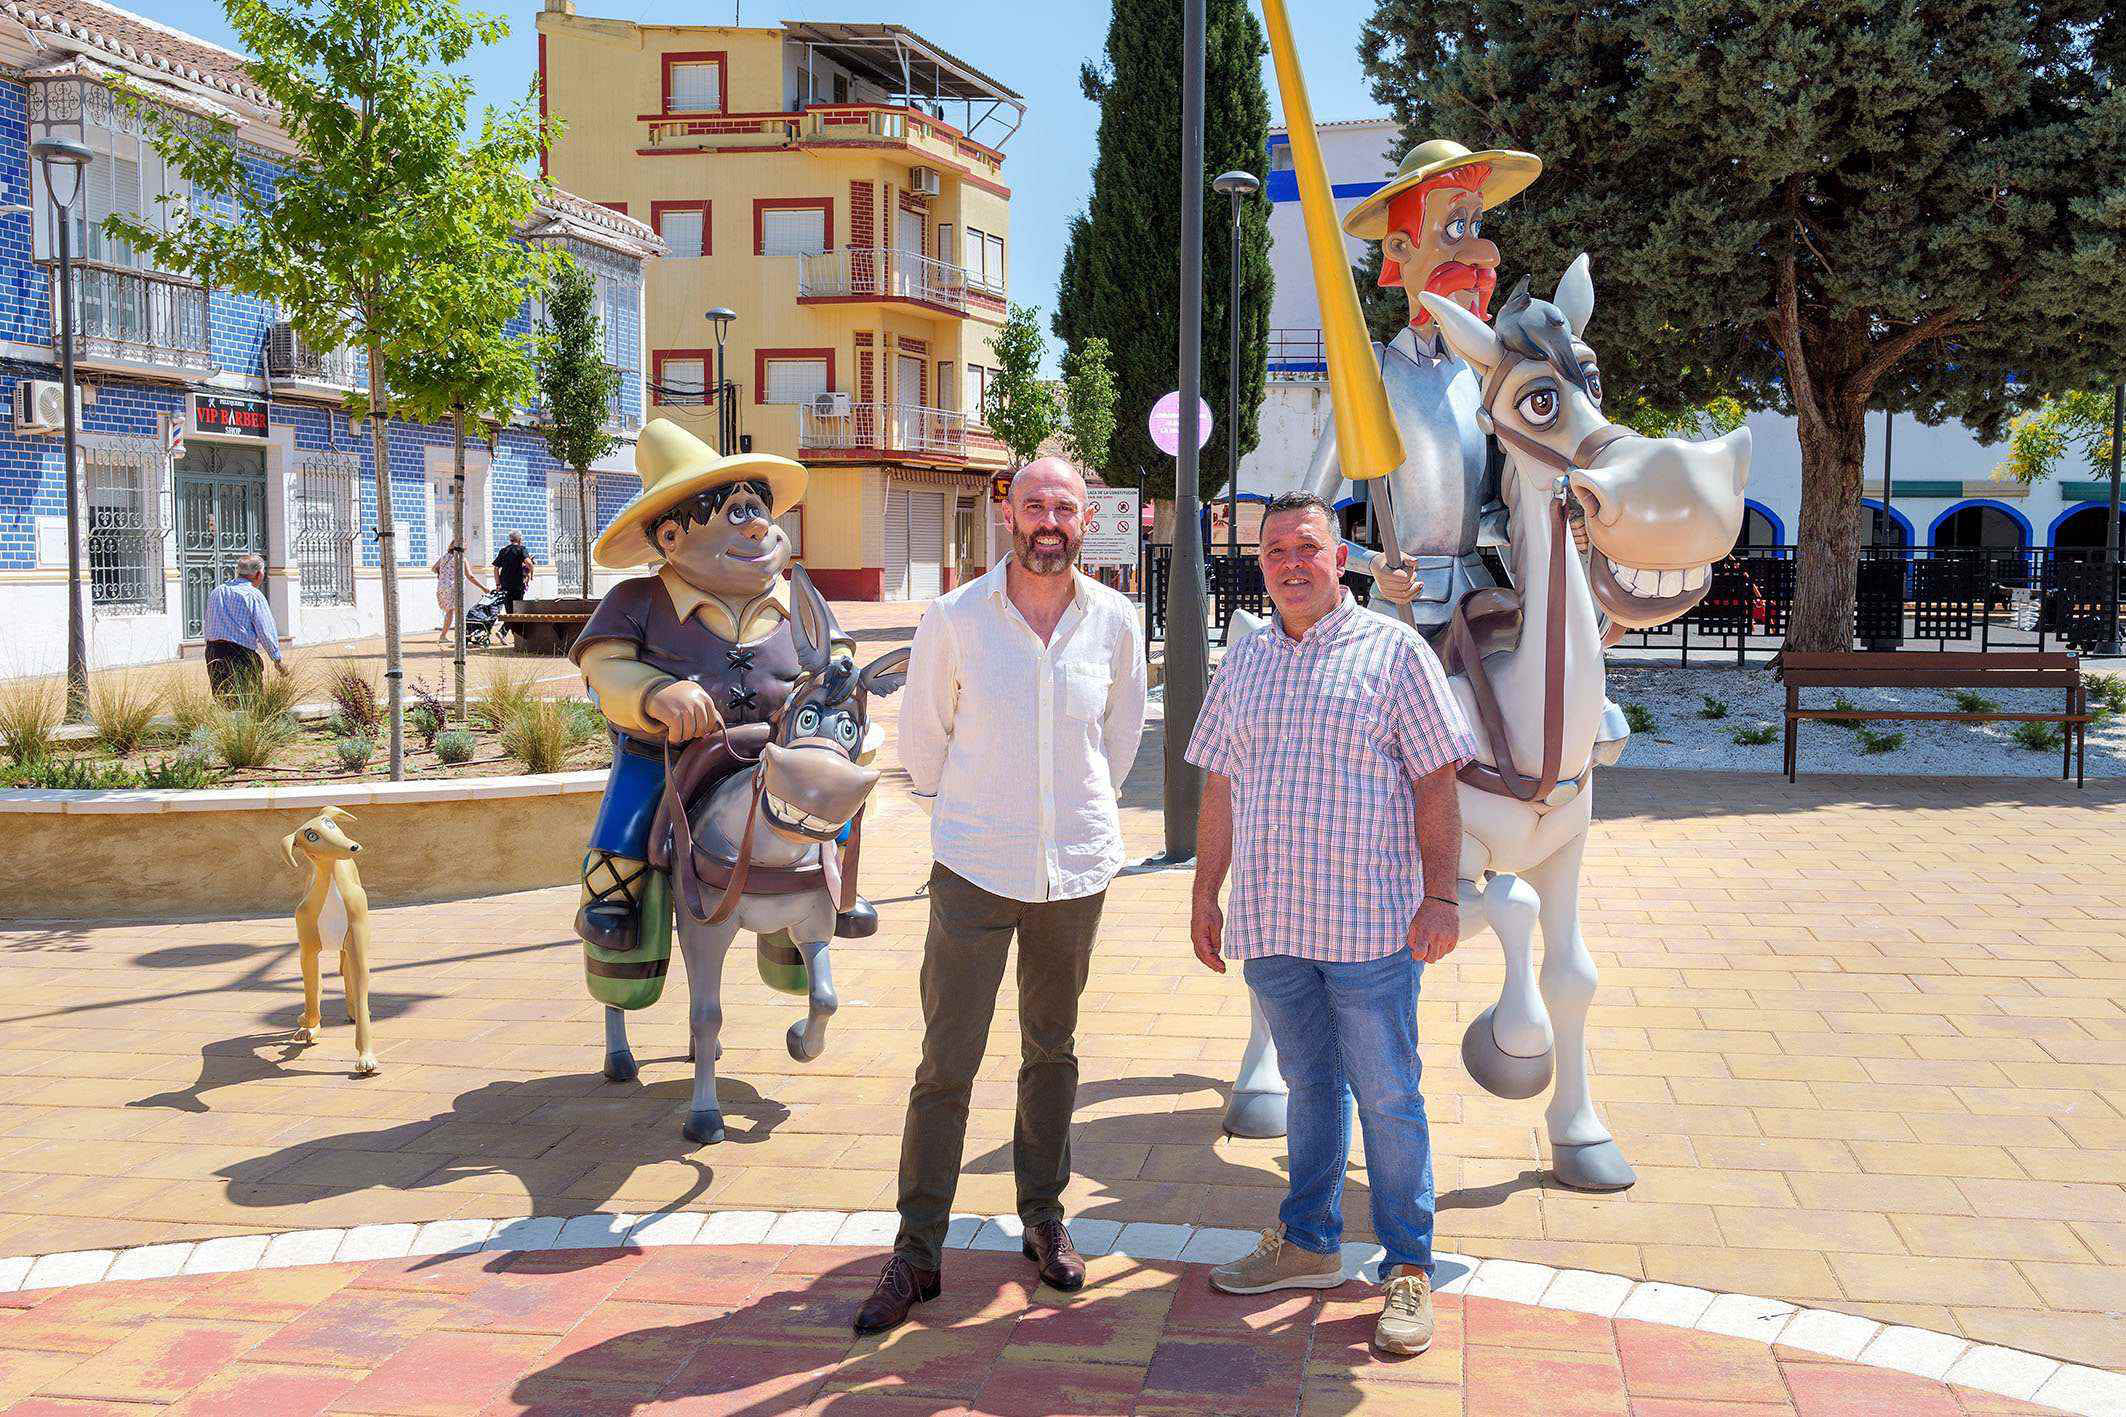 Oscar García: El genio detrás de las estatuas de Don Quijote de La Mancha de Argamasilla de Alba